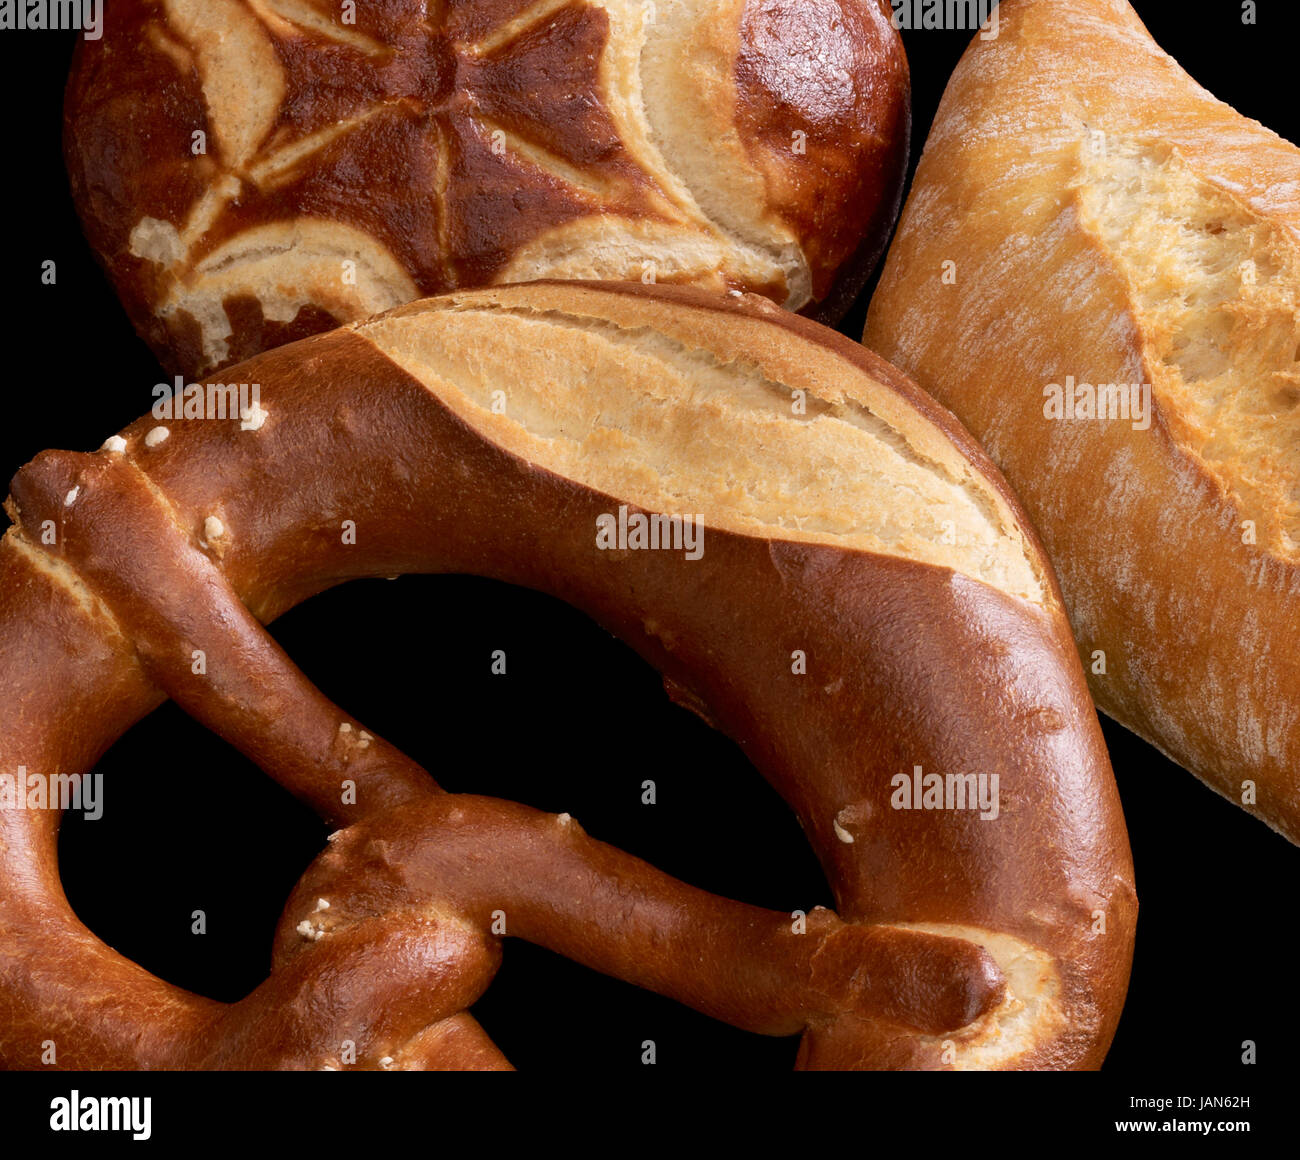 Dettaglio di un po' di tedesco lye panini e pane nero indietro Foto Stock